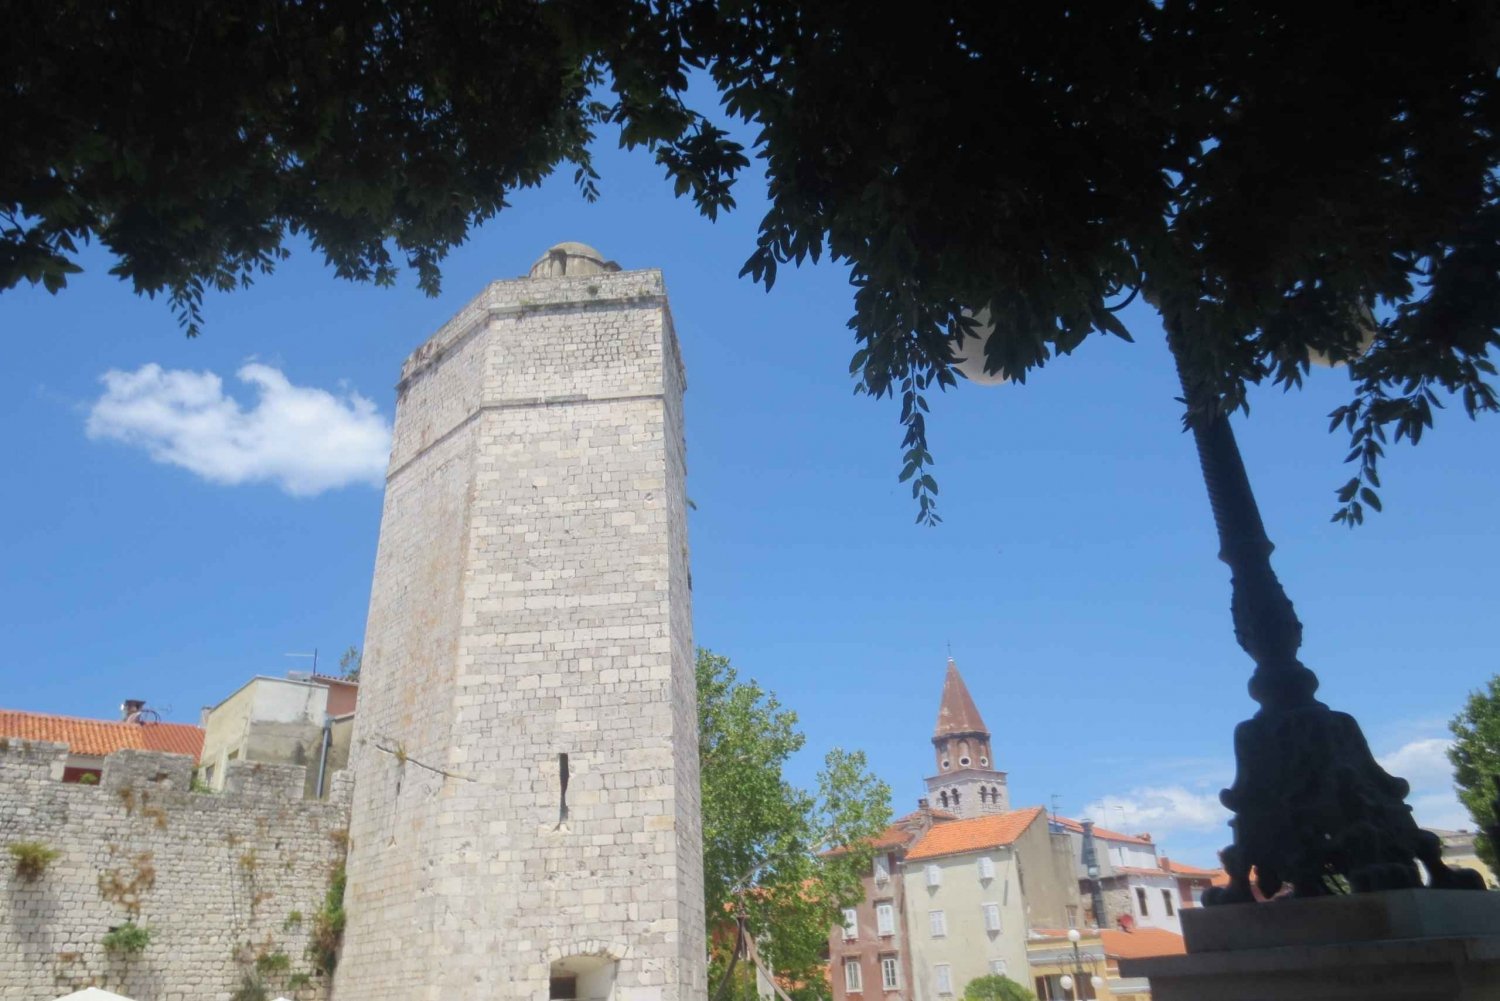 Zadarin historiallinen opastettu kierros